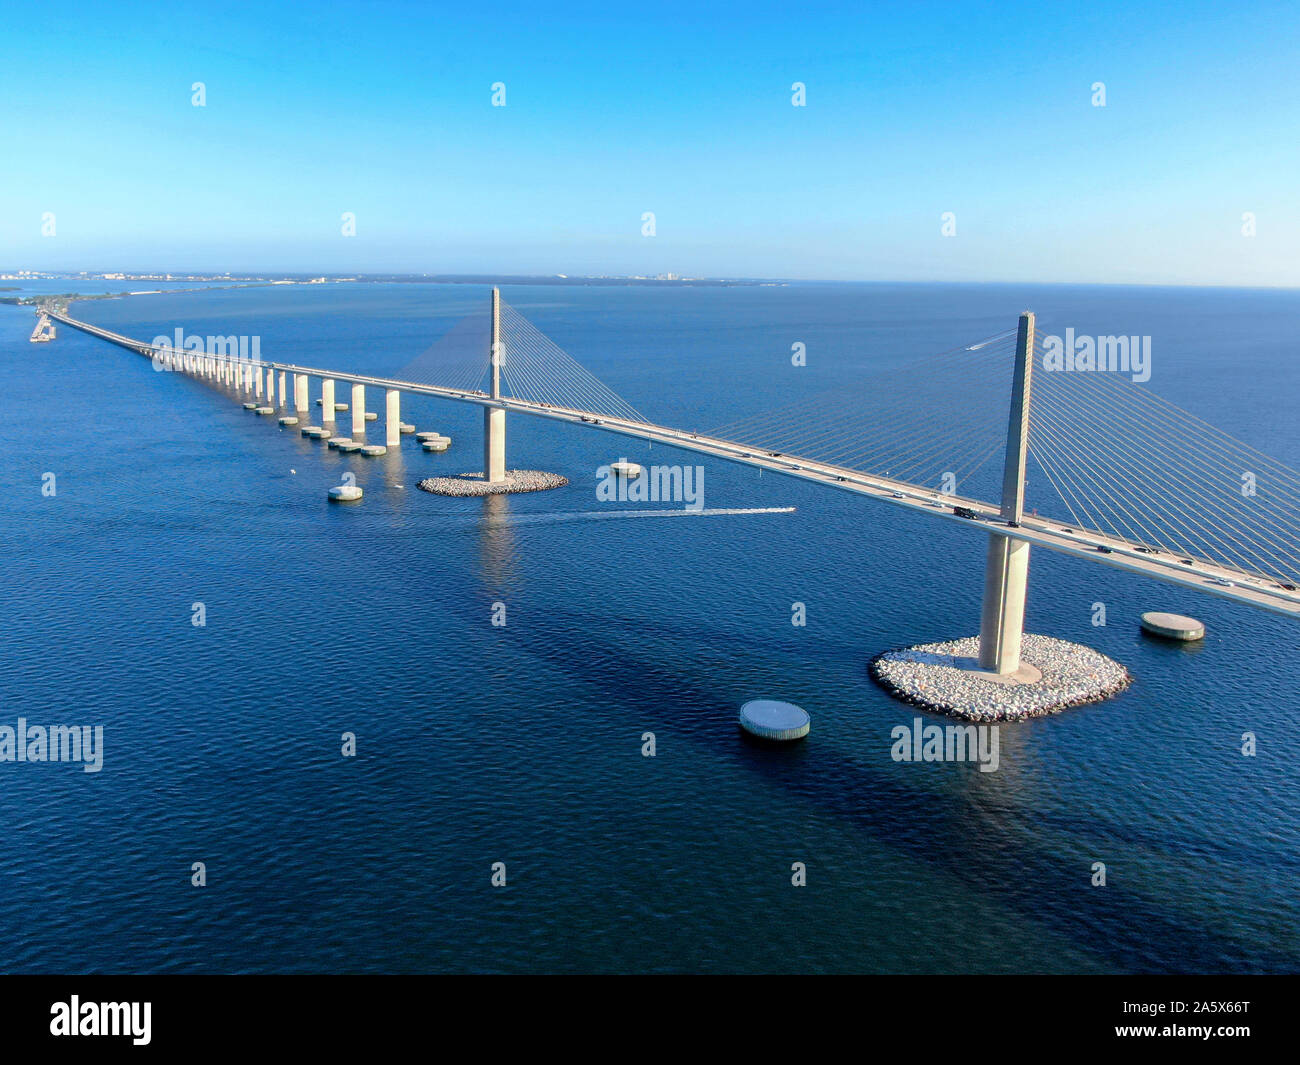 Vue aérienne de Sunshine Skyway, Tampa Bay en Floride, aux États-Unis. Câble en acier grand pont suspendu. Banque D'Images